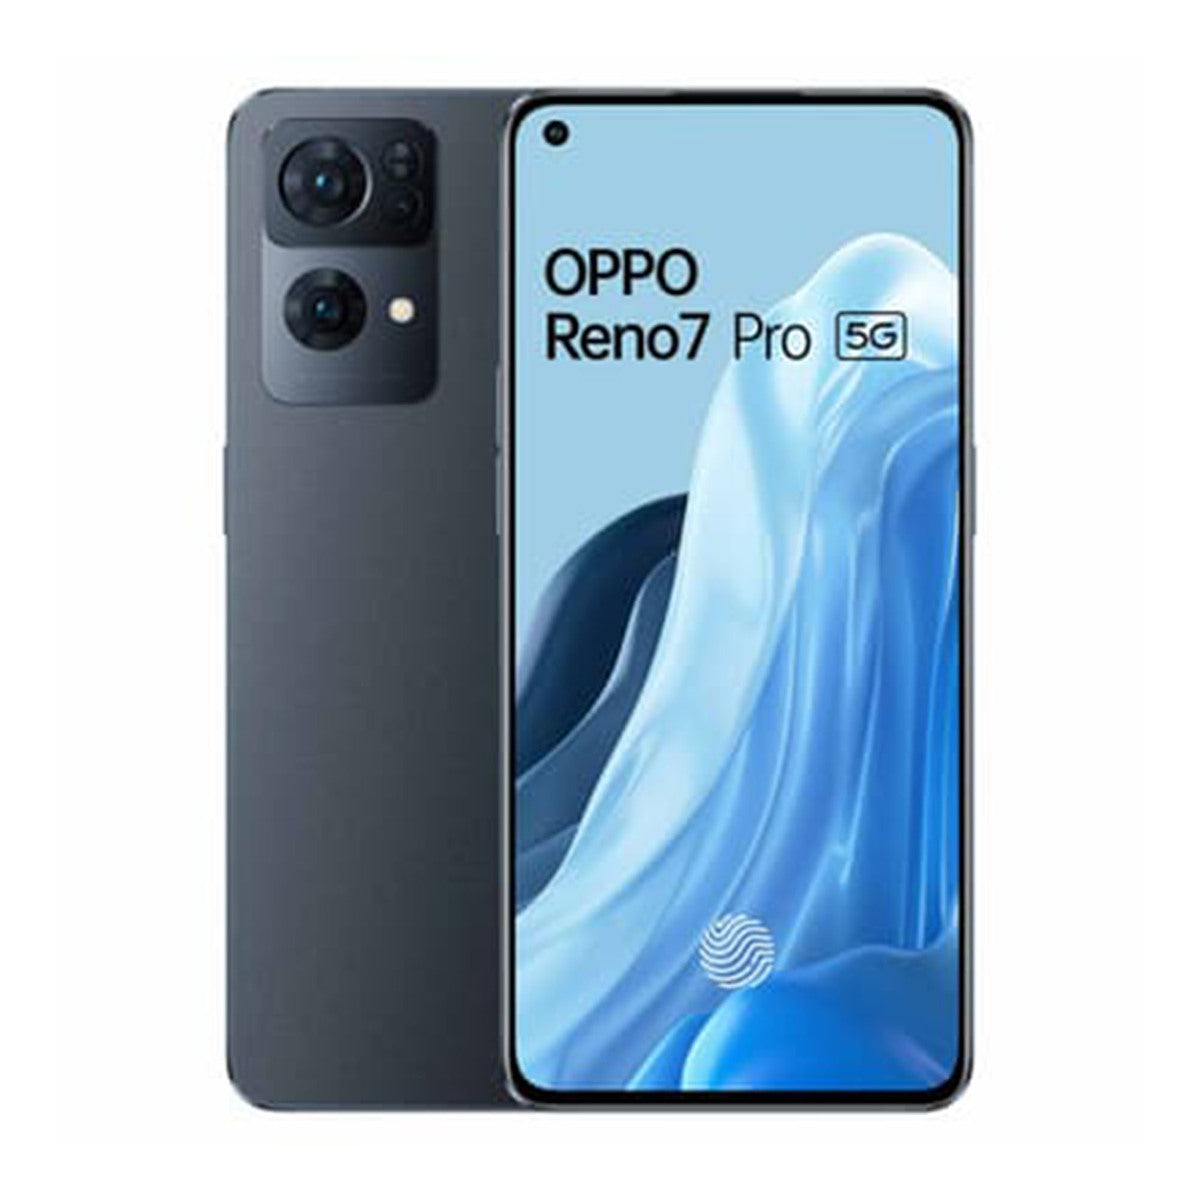 Oppo Reno 7 Pro 5G